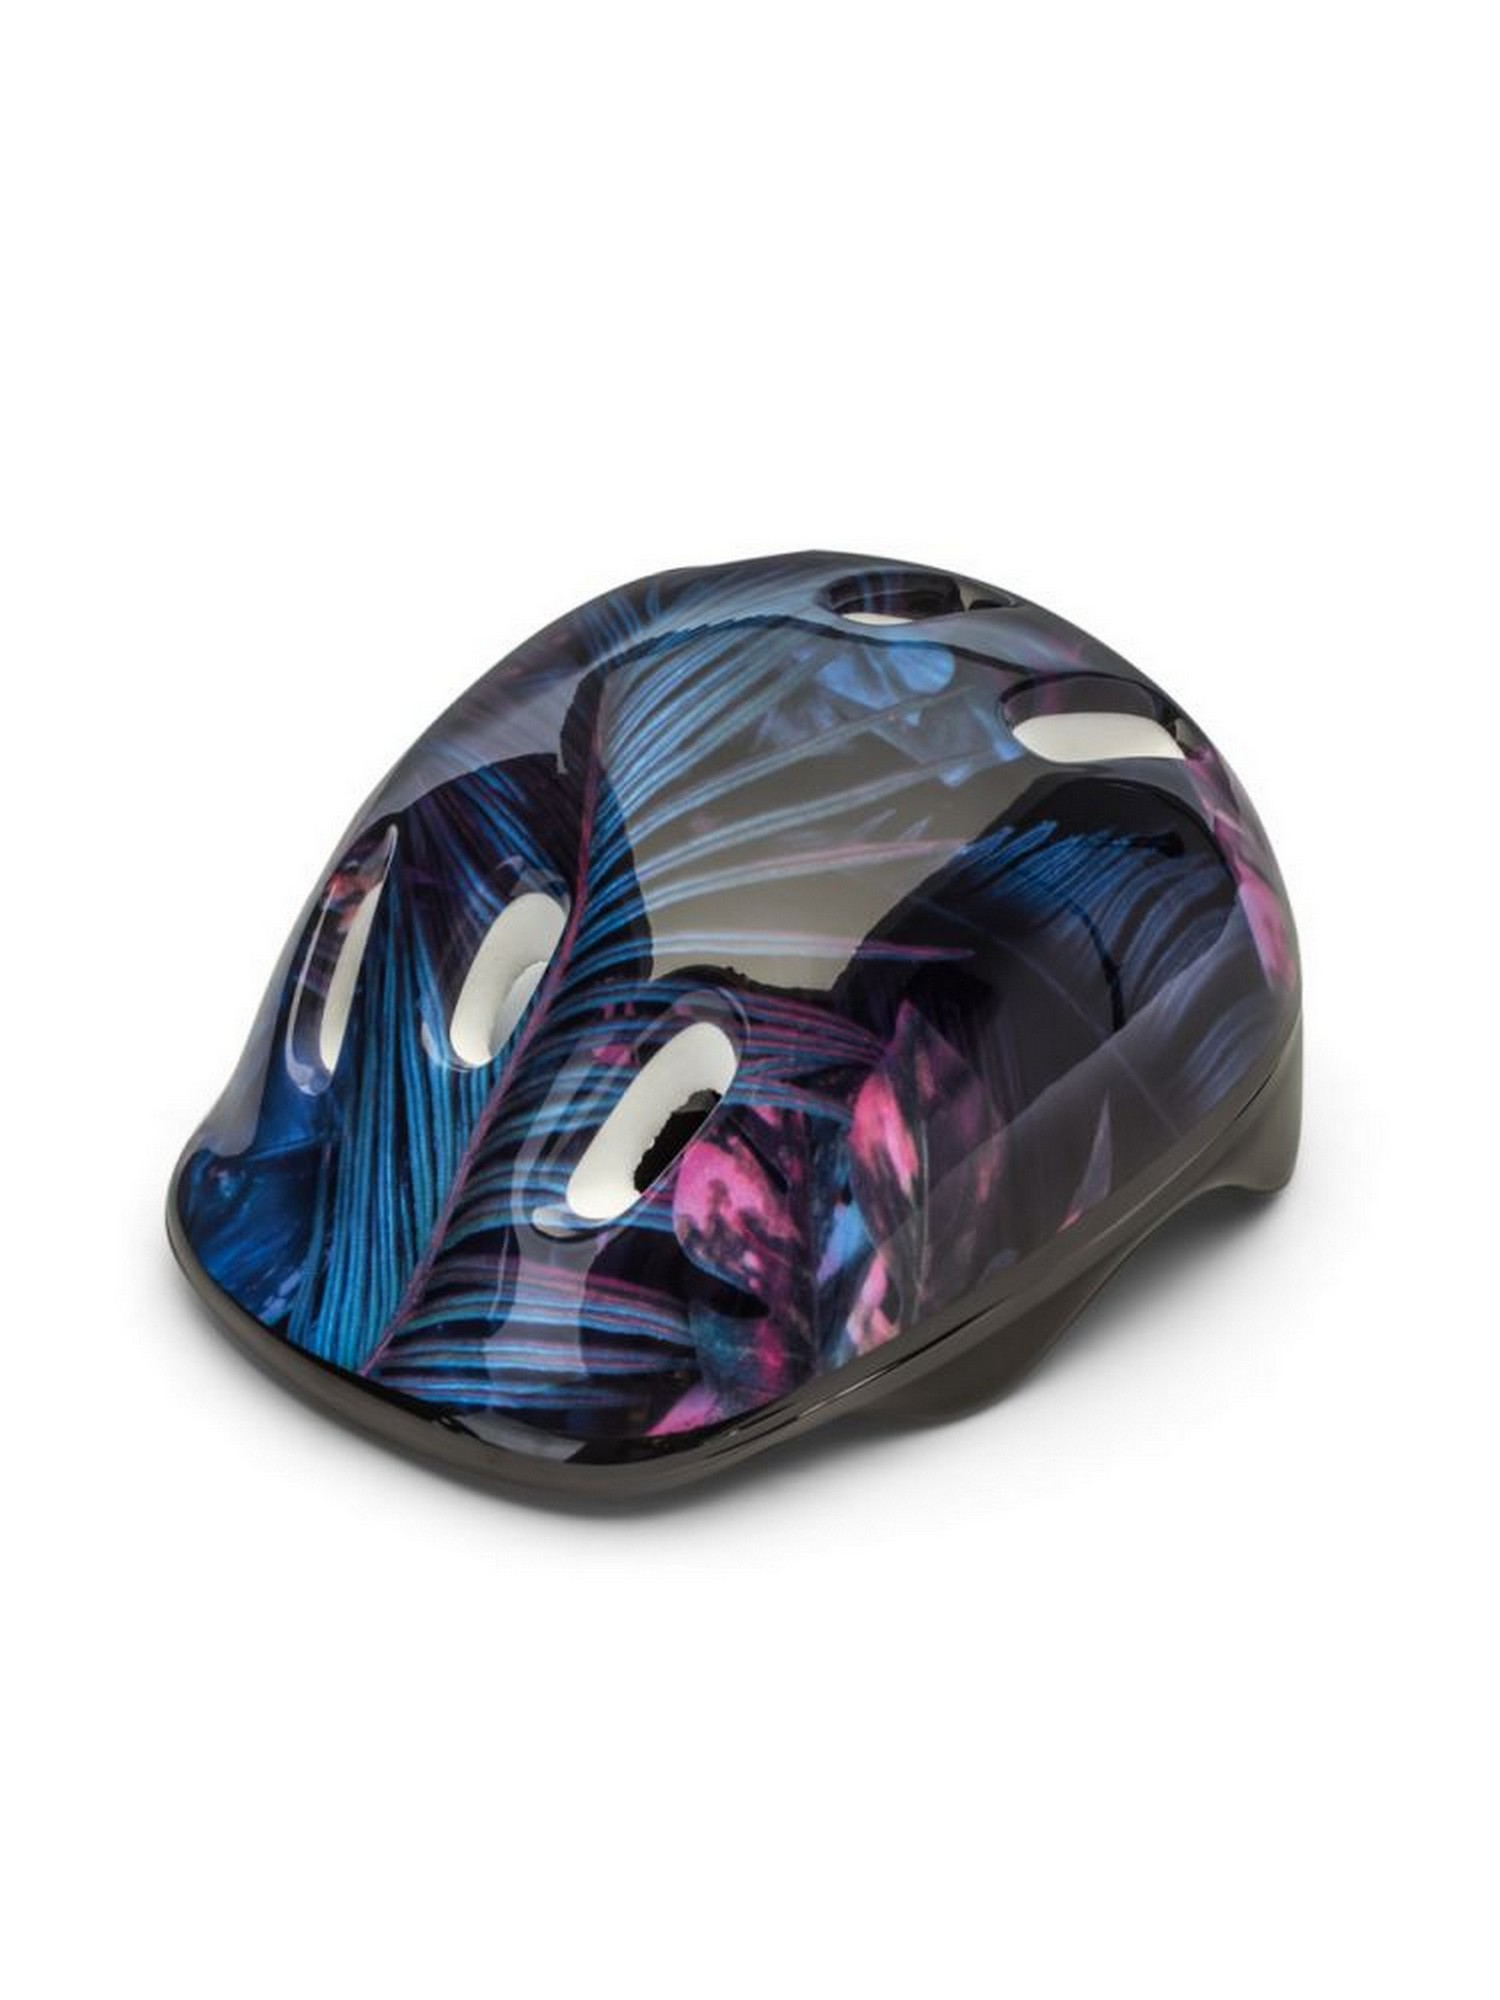 Шлем защитный подростковый Atemi размер окруж (52-54 см), М (6-12 лет) AKH06BM аквапринт Тропик